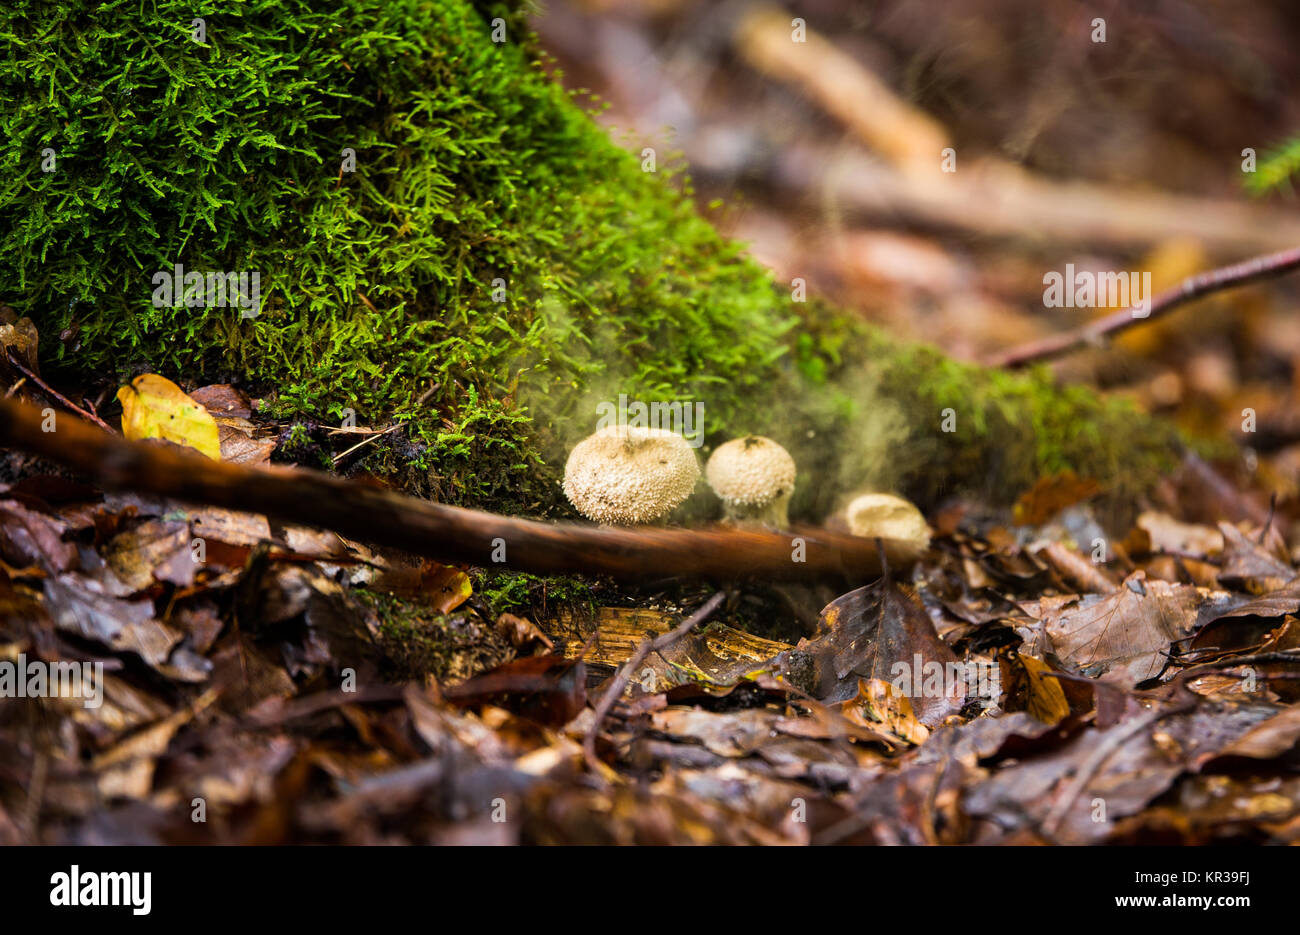 Wild mushrooms Bovista plumbea in autumn forest Stock Photo